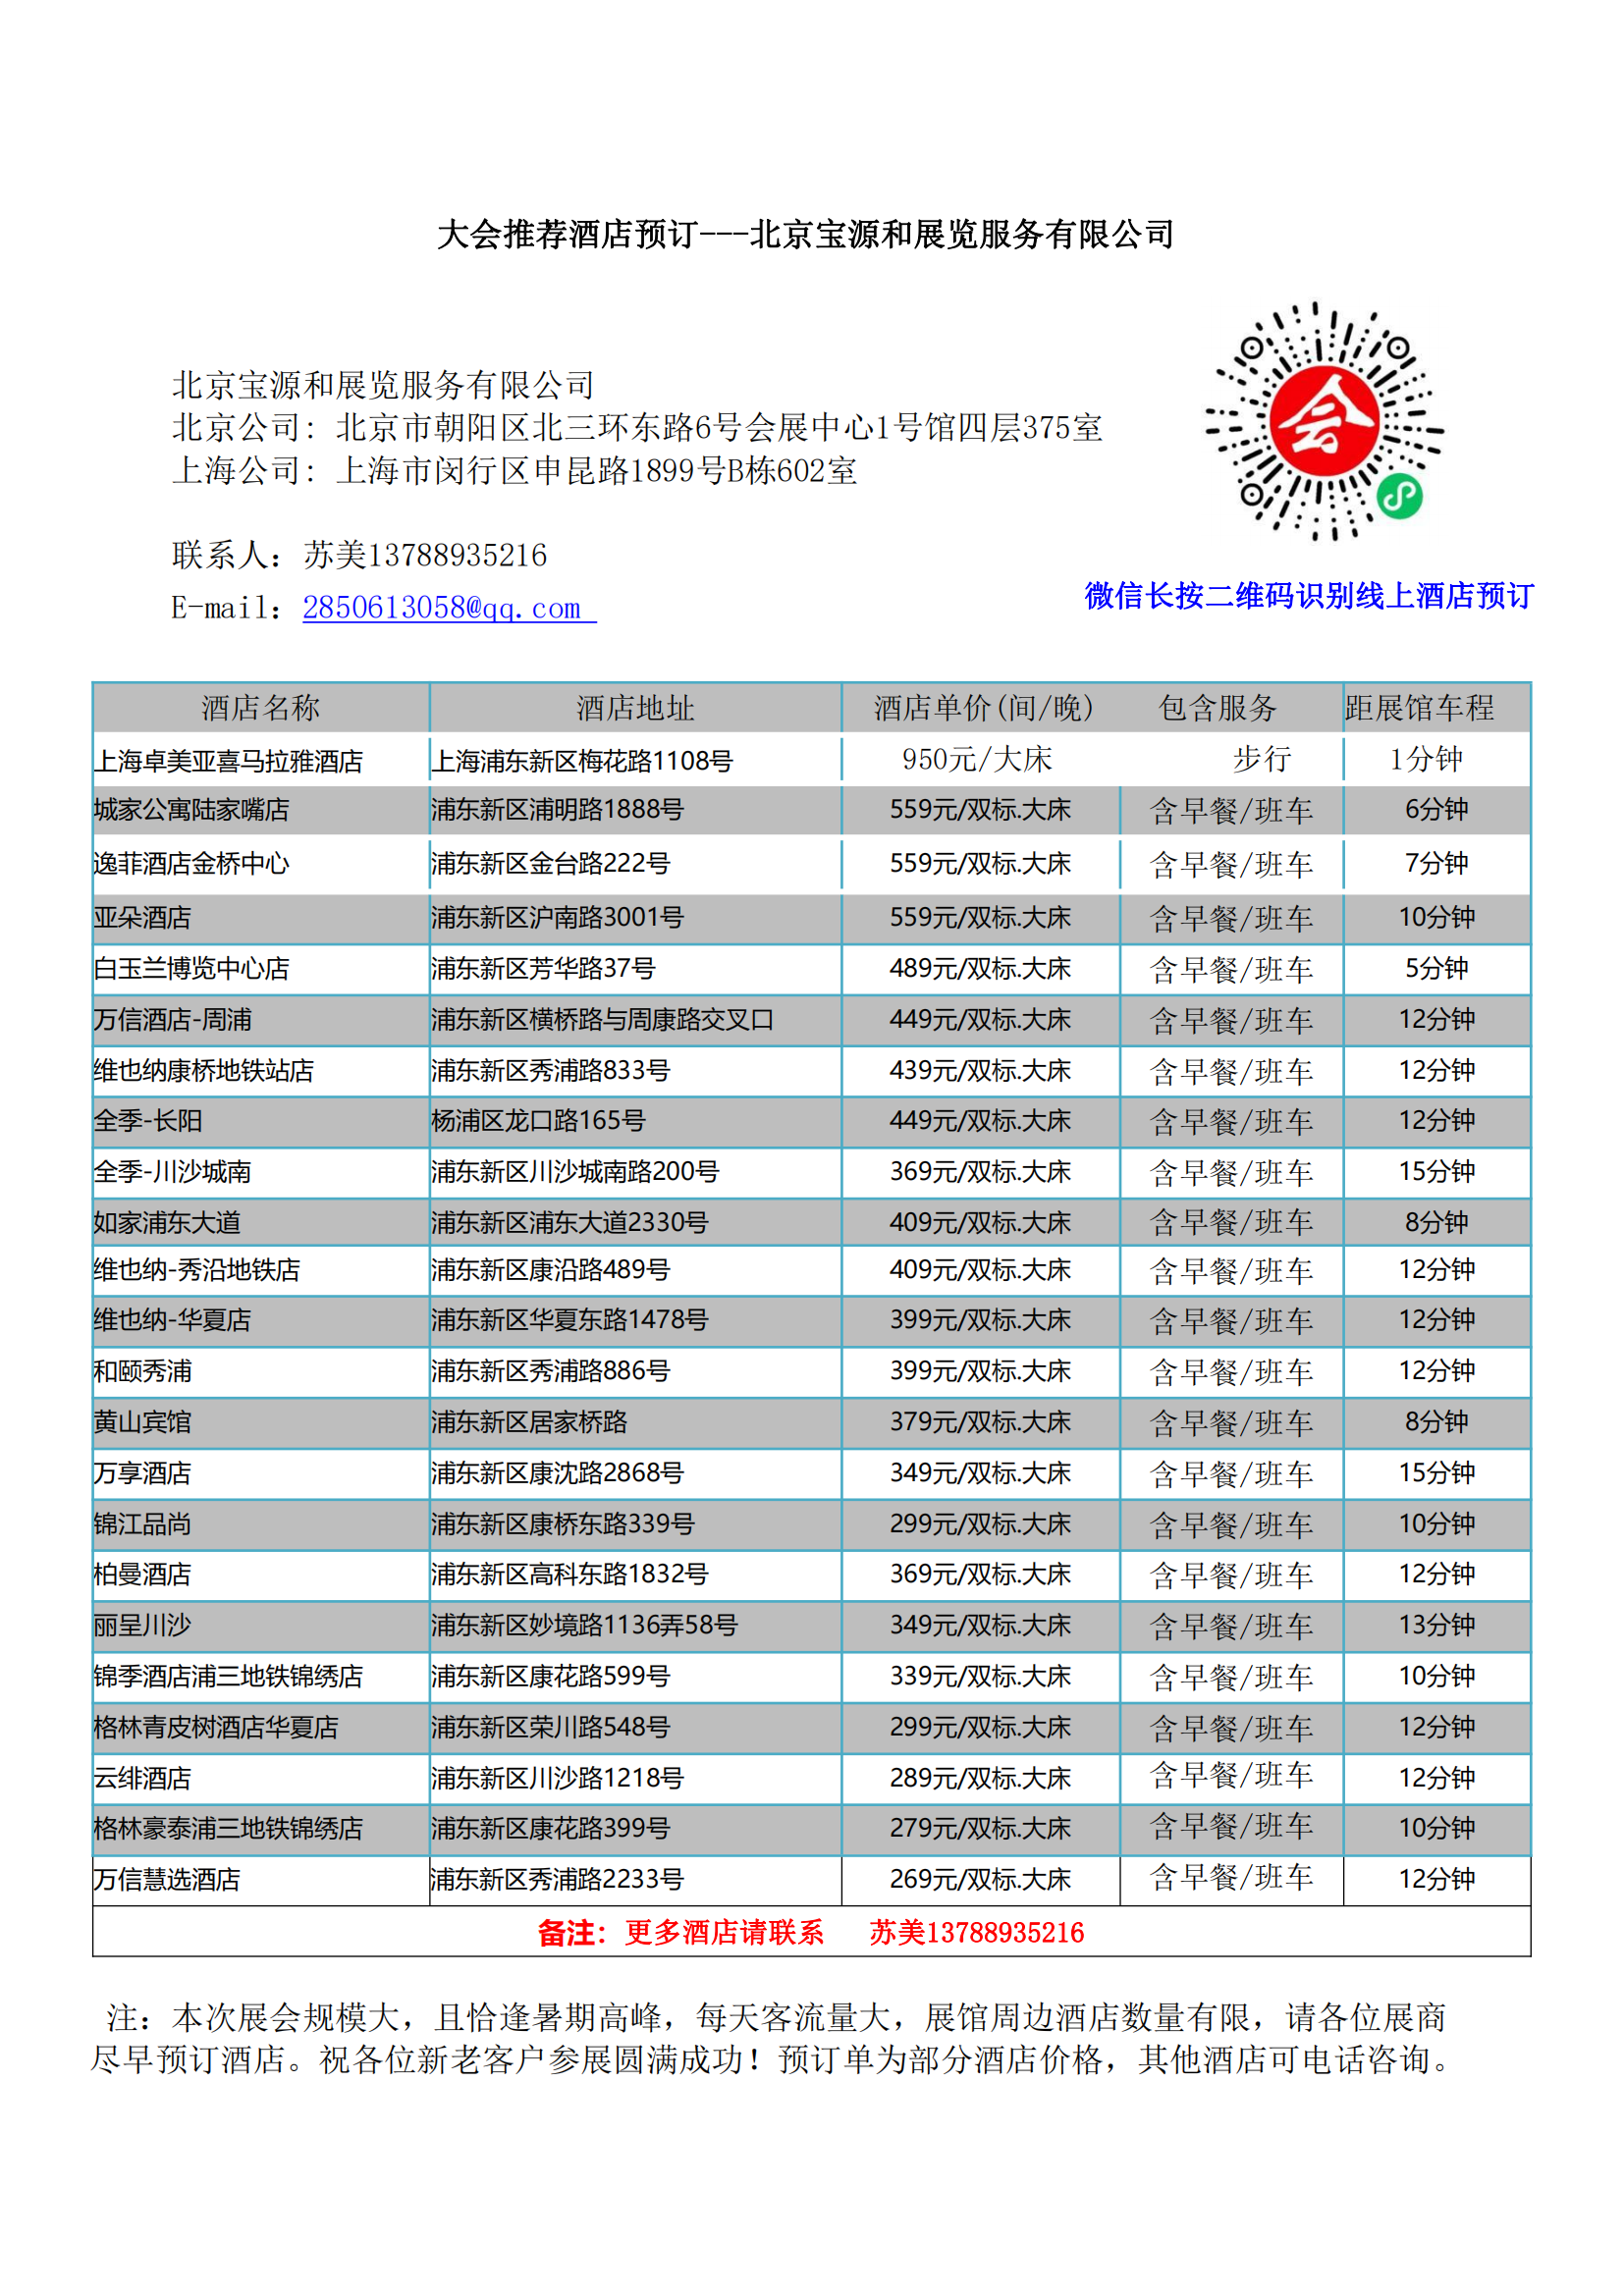 2023年上海墙纸展酒店预定表 - 苏美_20230620155029_00.png